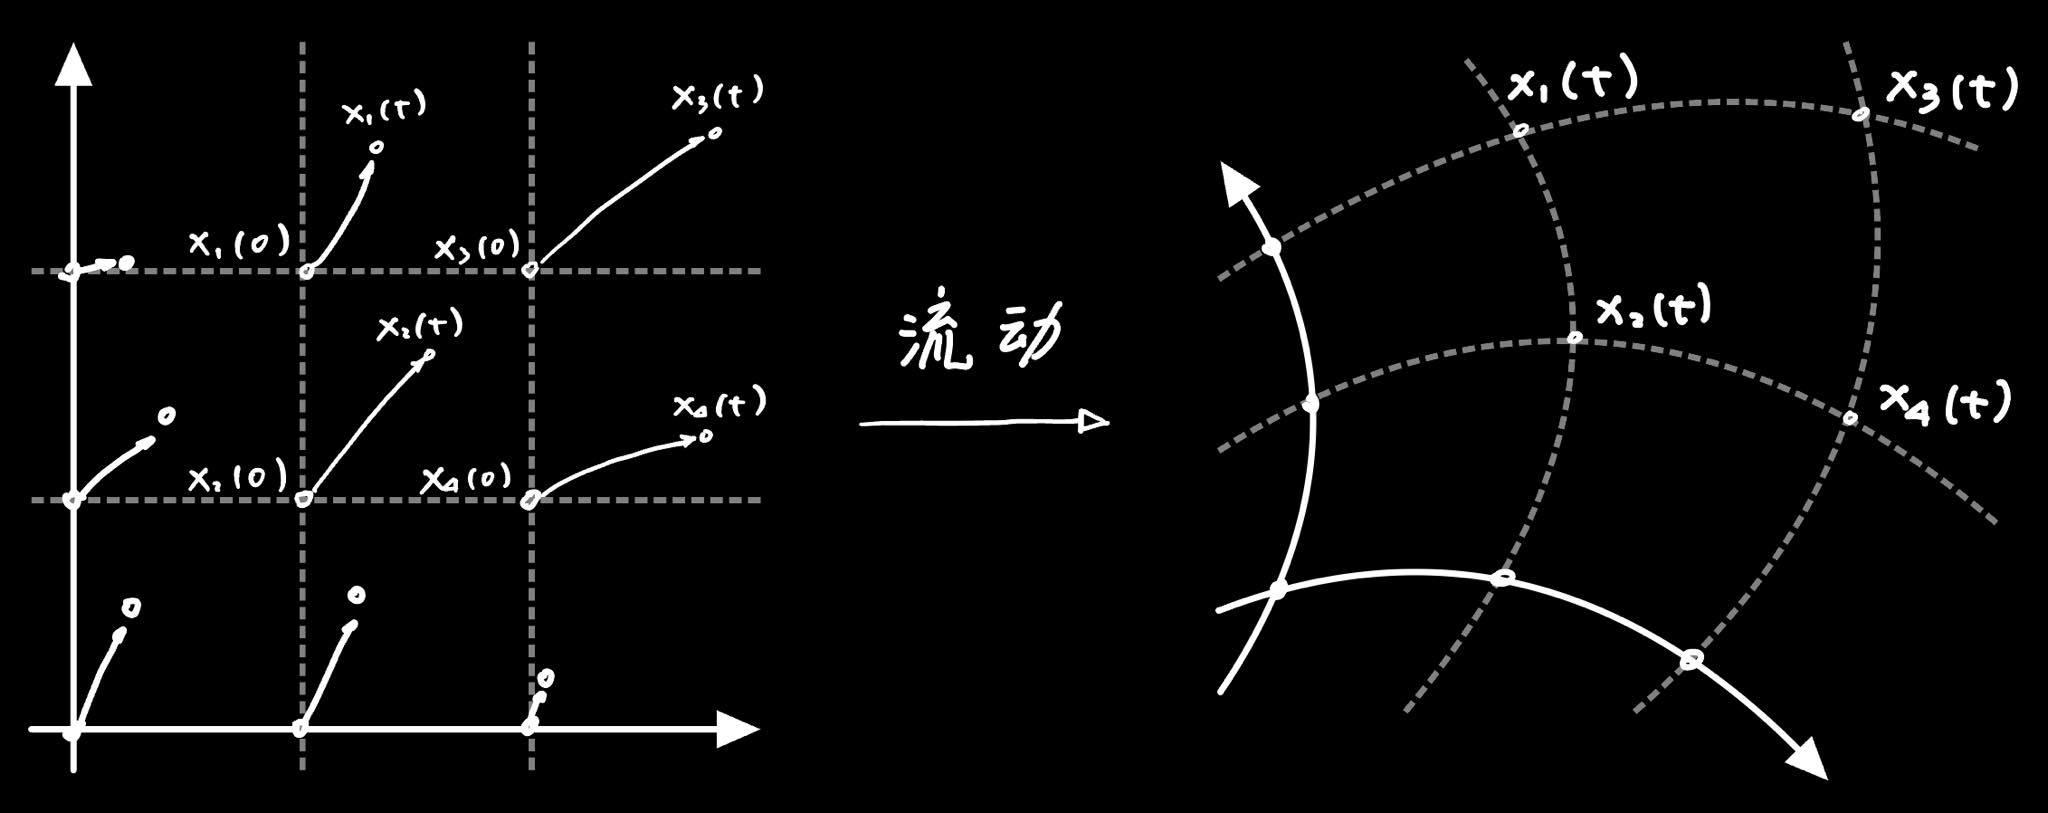 拉格朗日法用空间随流动的变换来描述流动